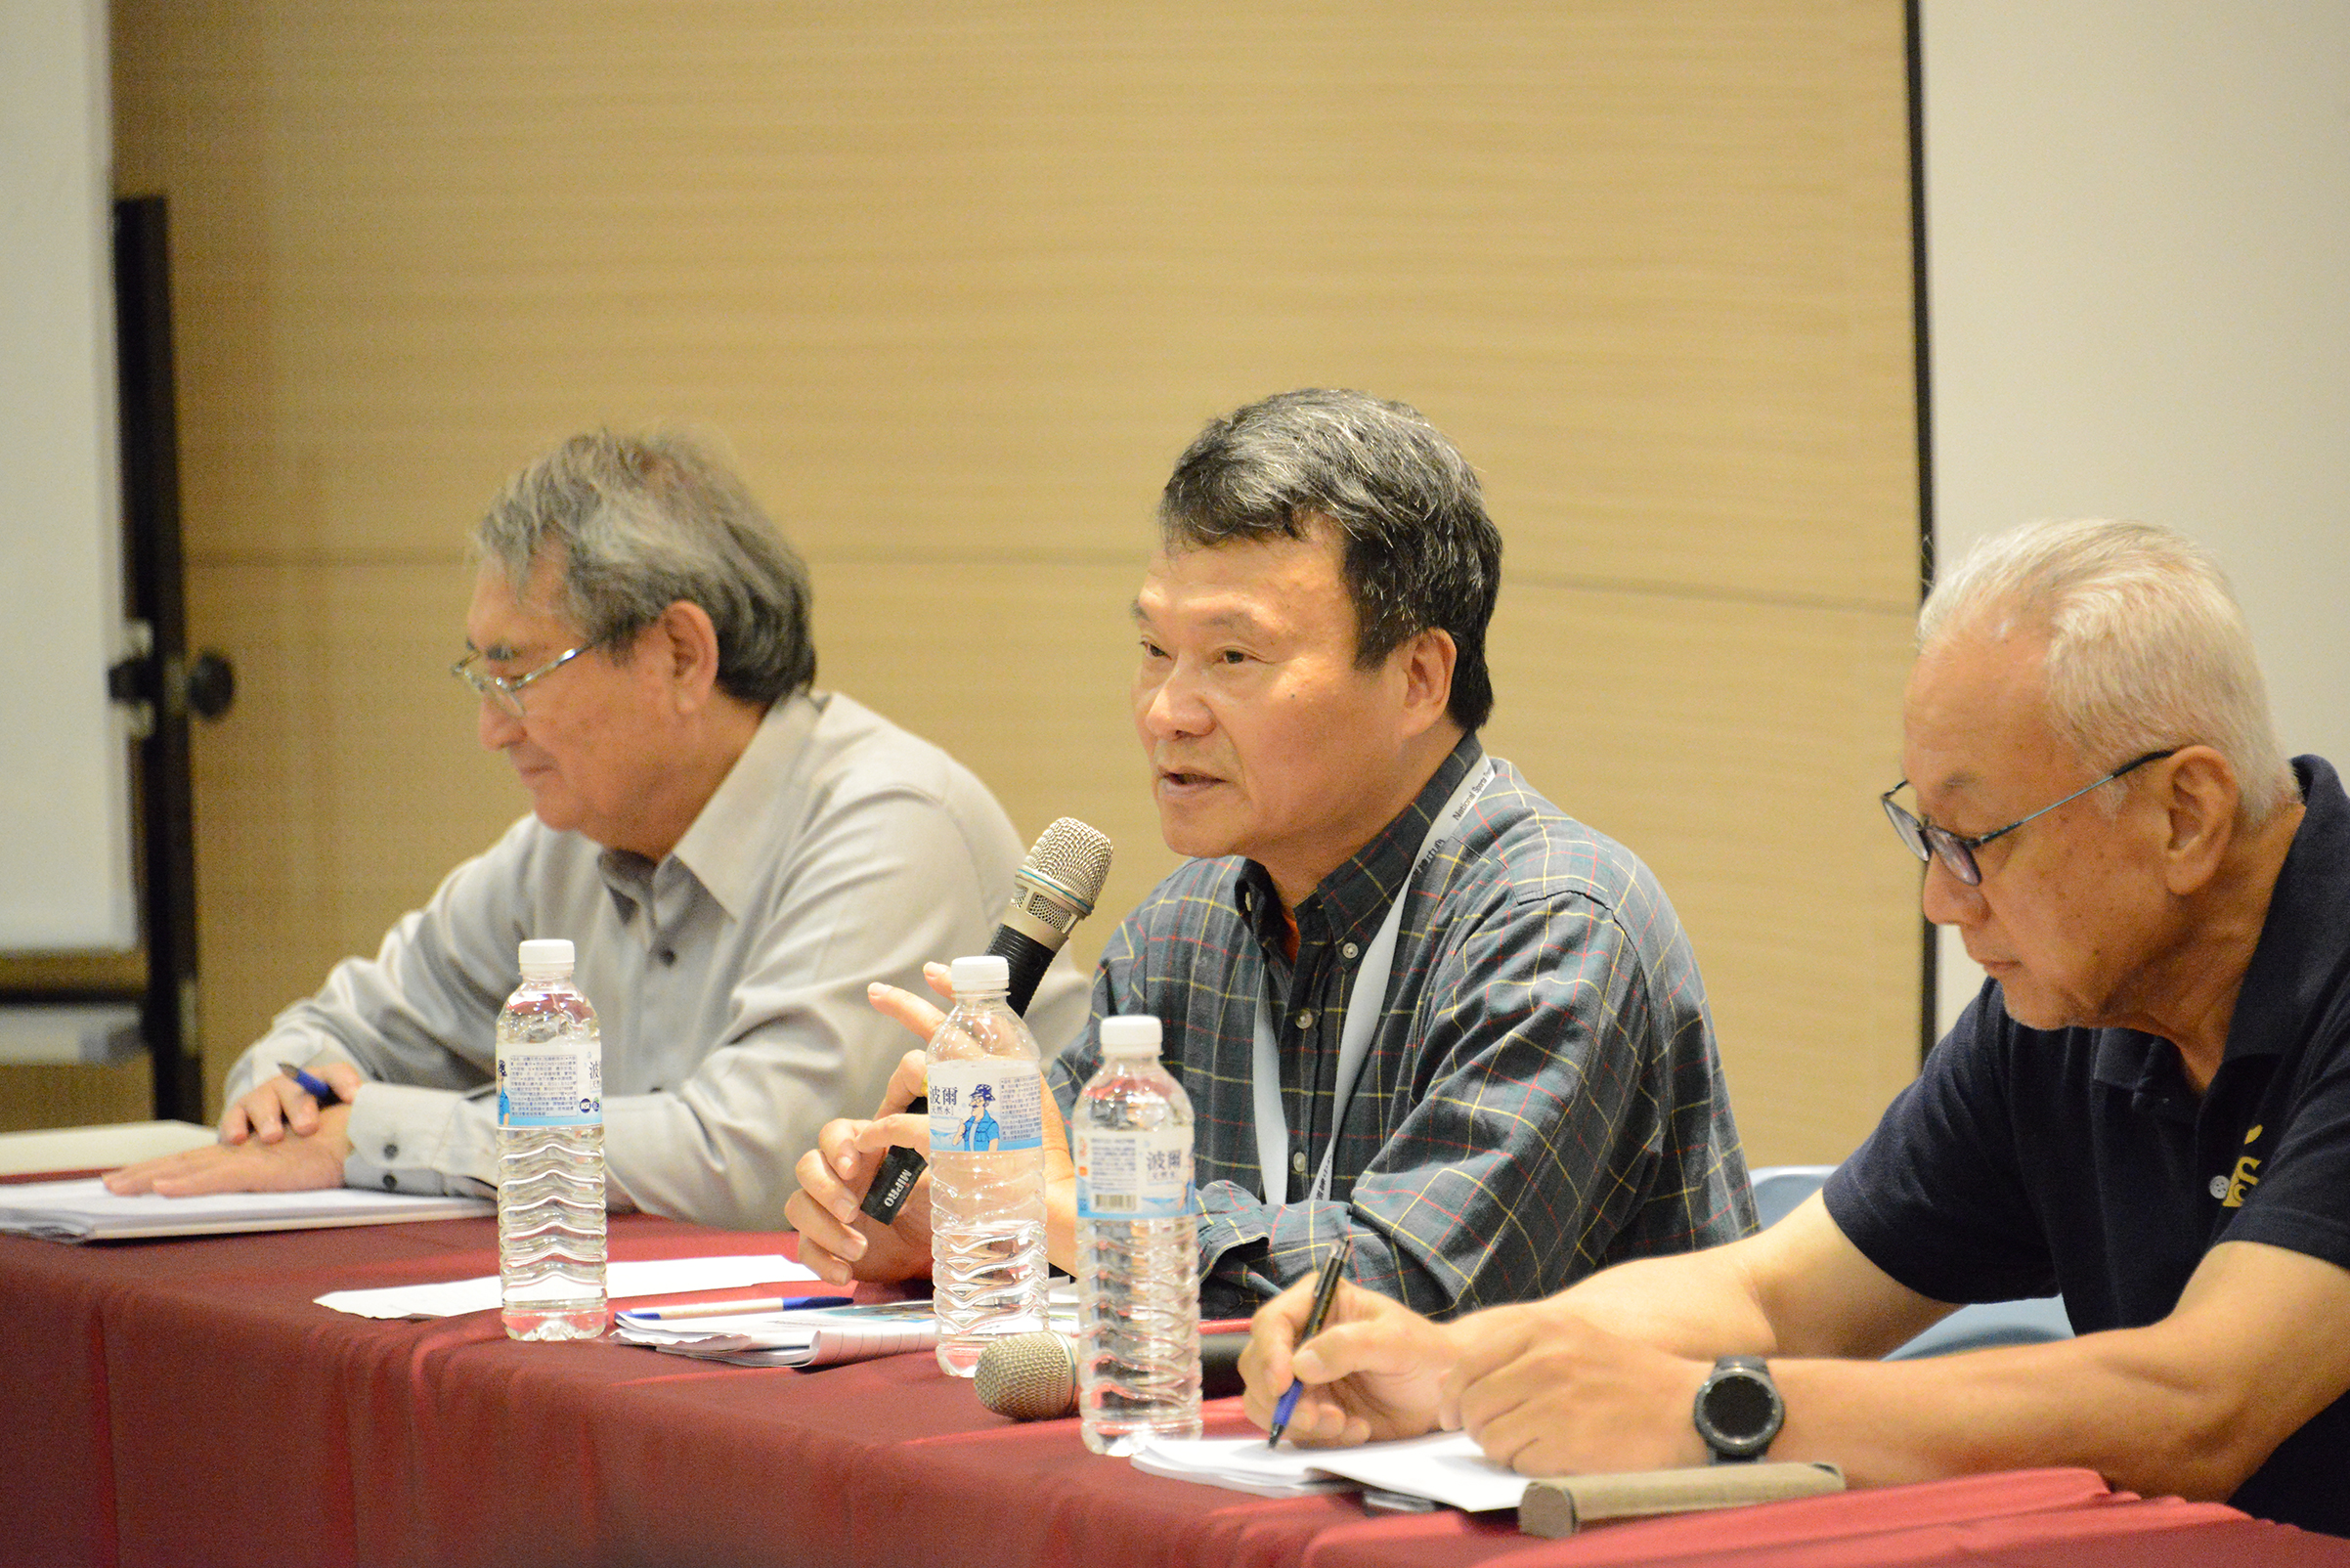 李文彬執行長、魏香明委員、蔡崇濱委員都參與了最後的座談